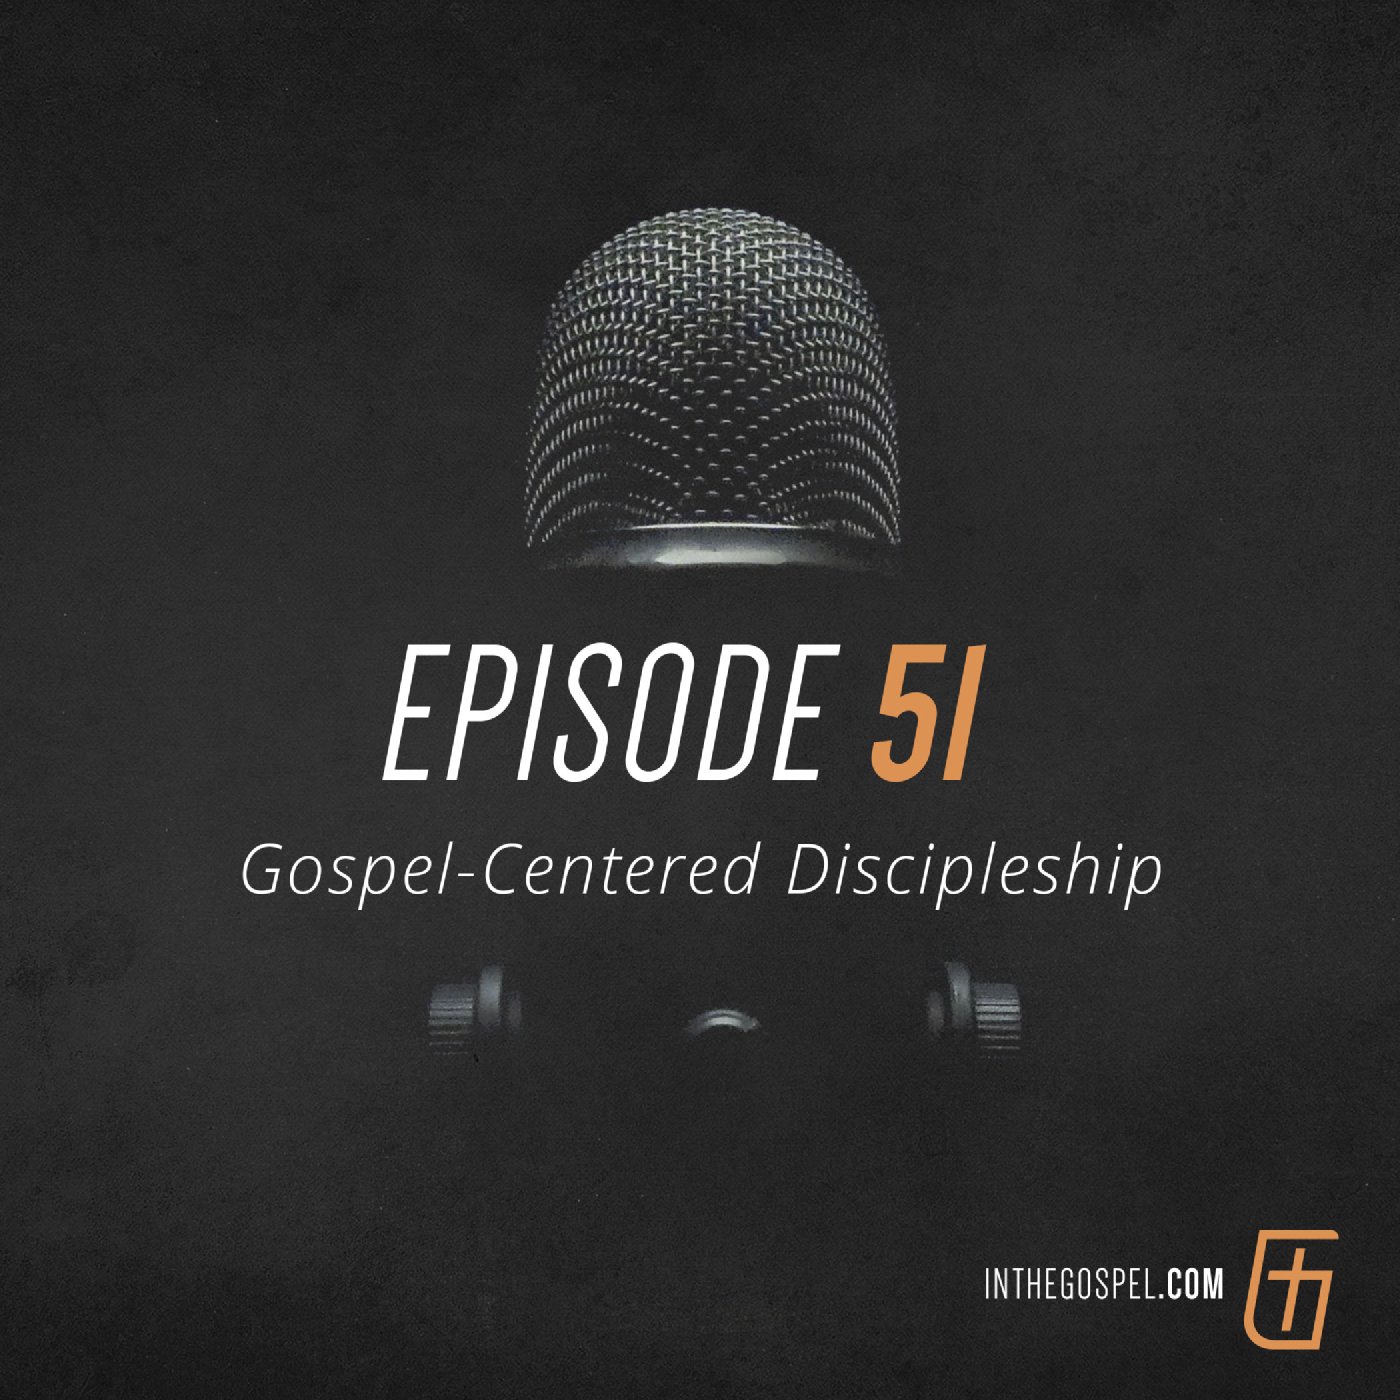 Episode 51: Gospel-Centered Discipleship